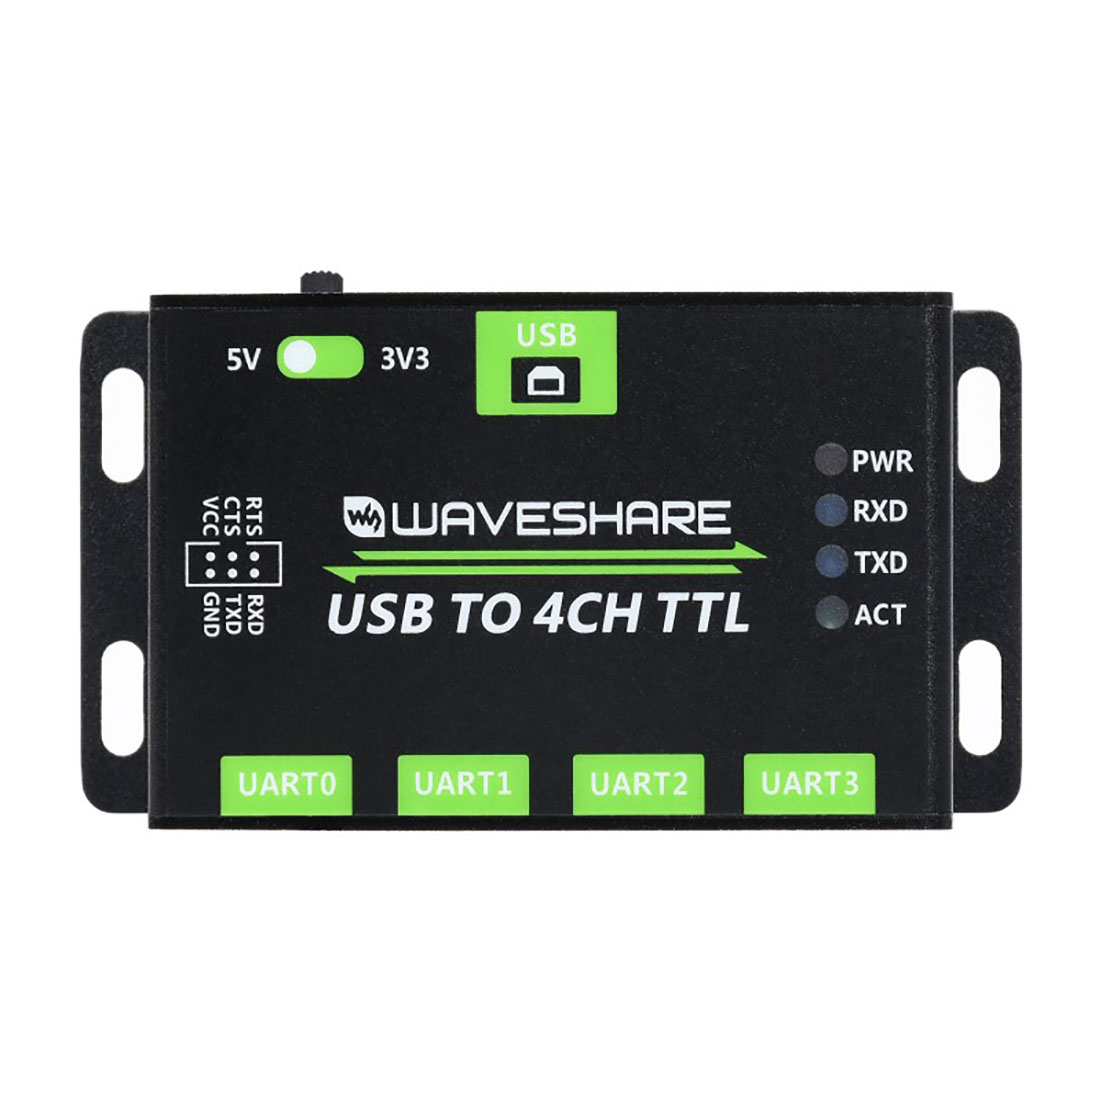  USB to 4CH TTL (UART) , USB to UART..